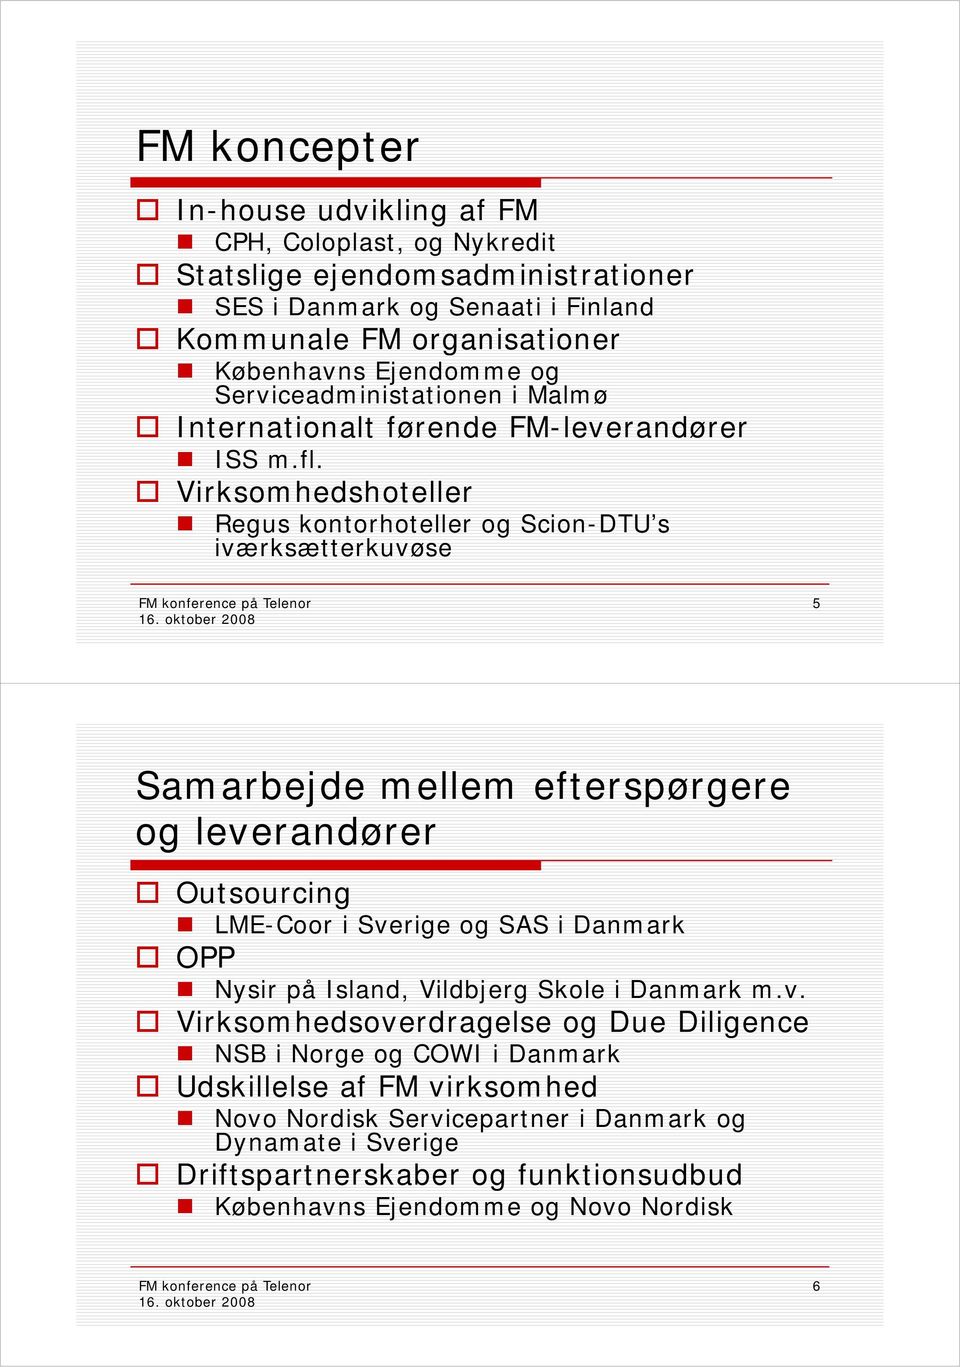 Virksomhedshoteller Regus kontorhoteller og Scion-DTU s iværksætterkuvøse 5 Samarbejde mellem efterspørgere og leverandører Outsourcing LME-Coor i Sverige og SAS i Danmark OPP Nysir på